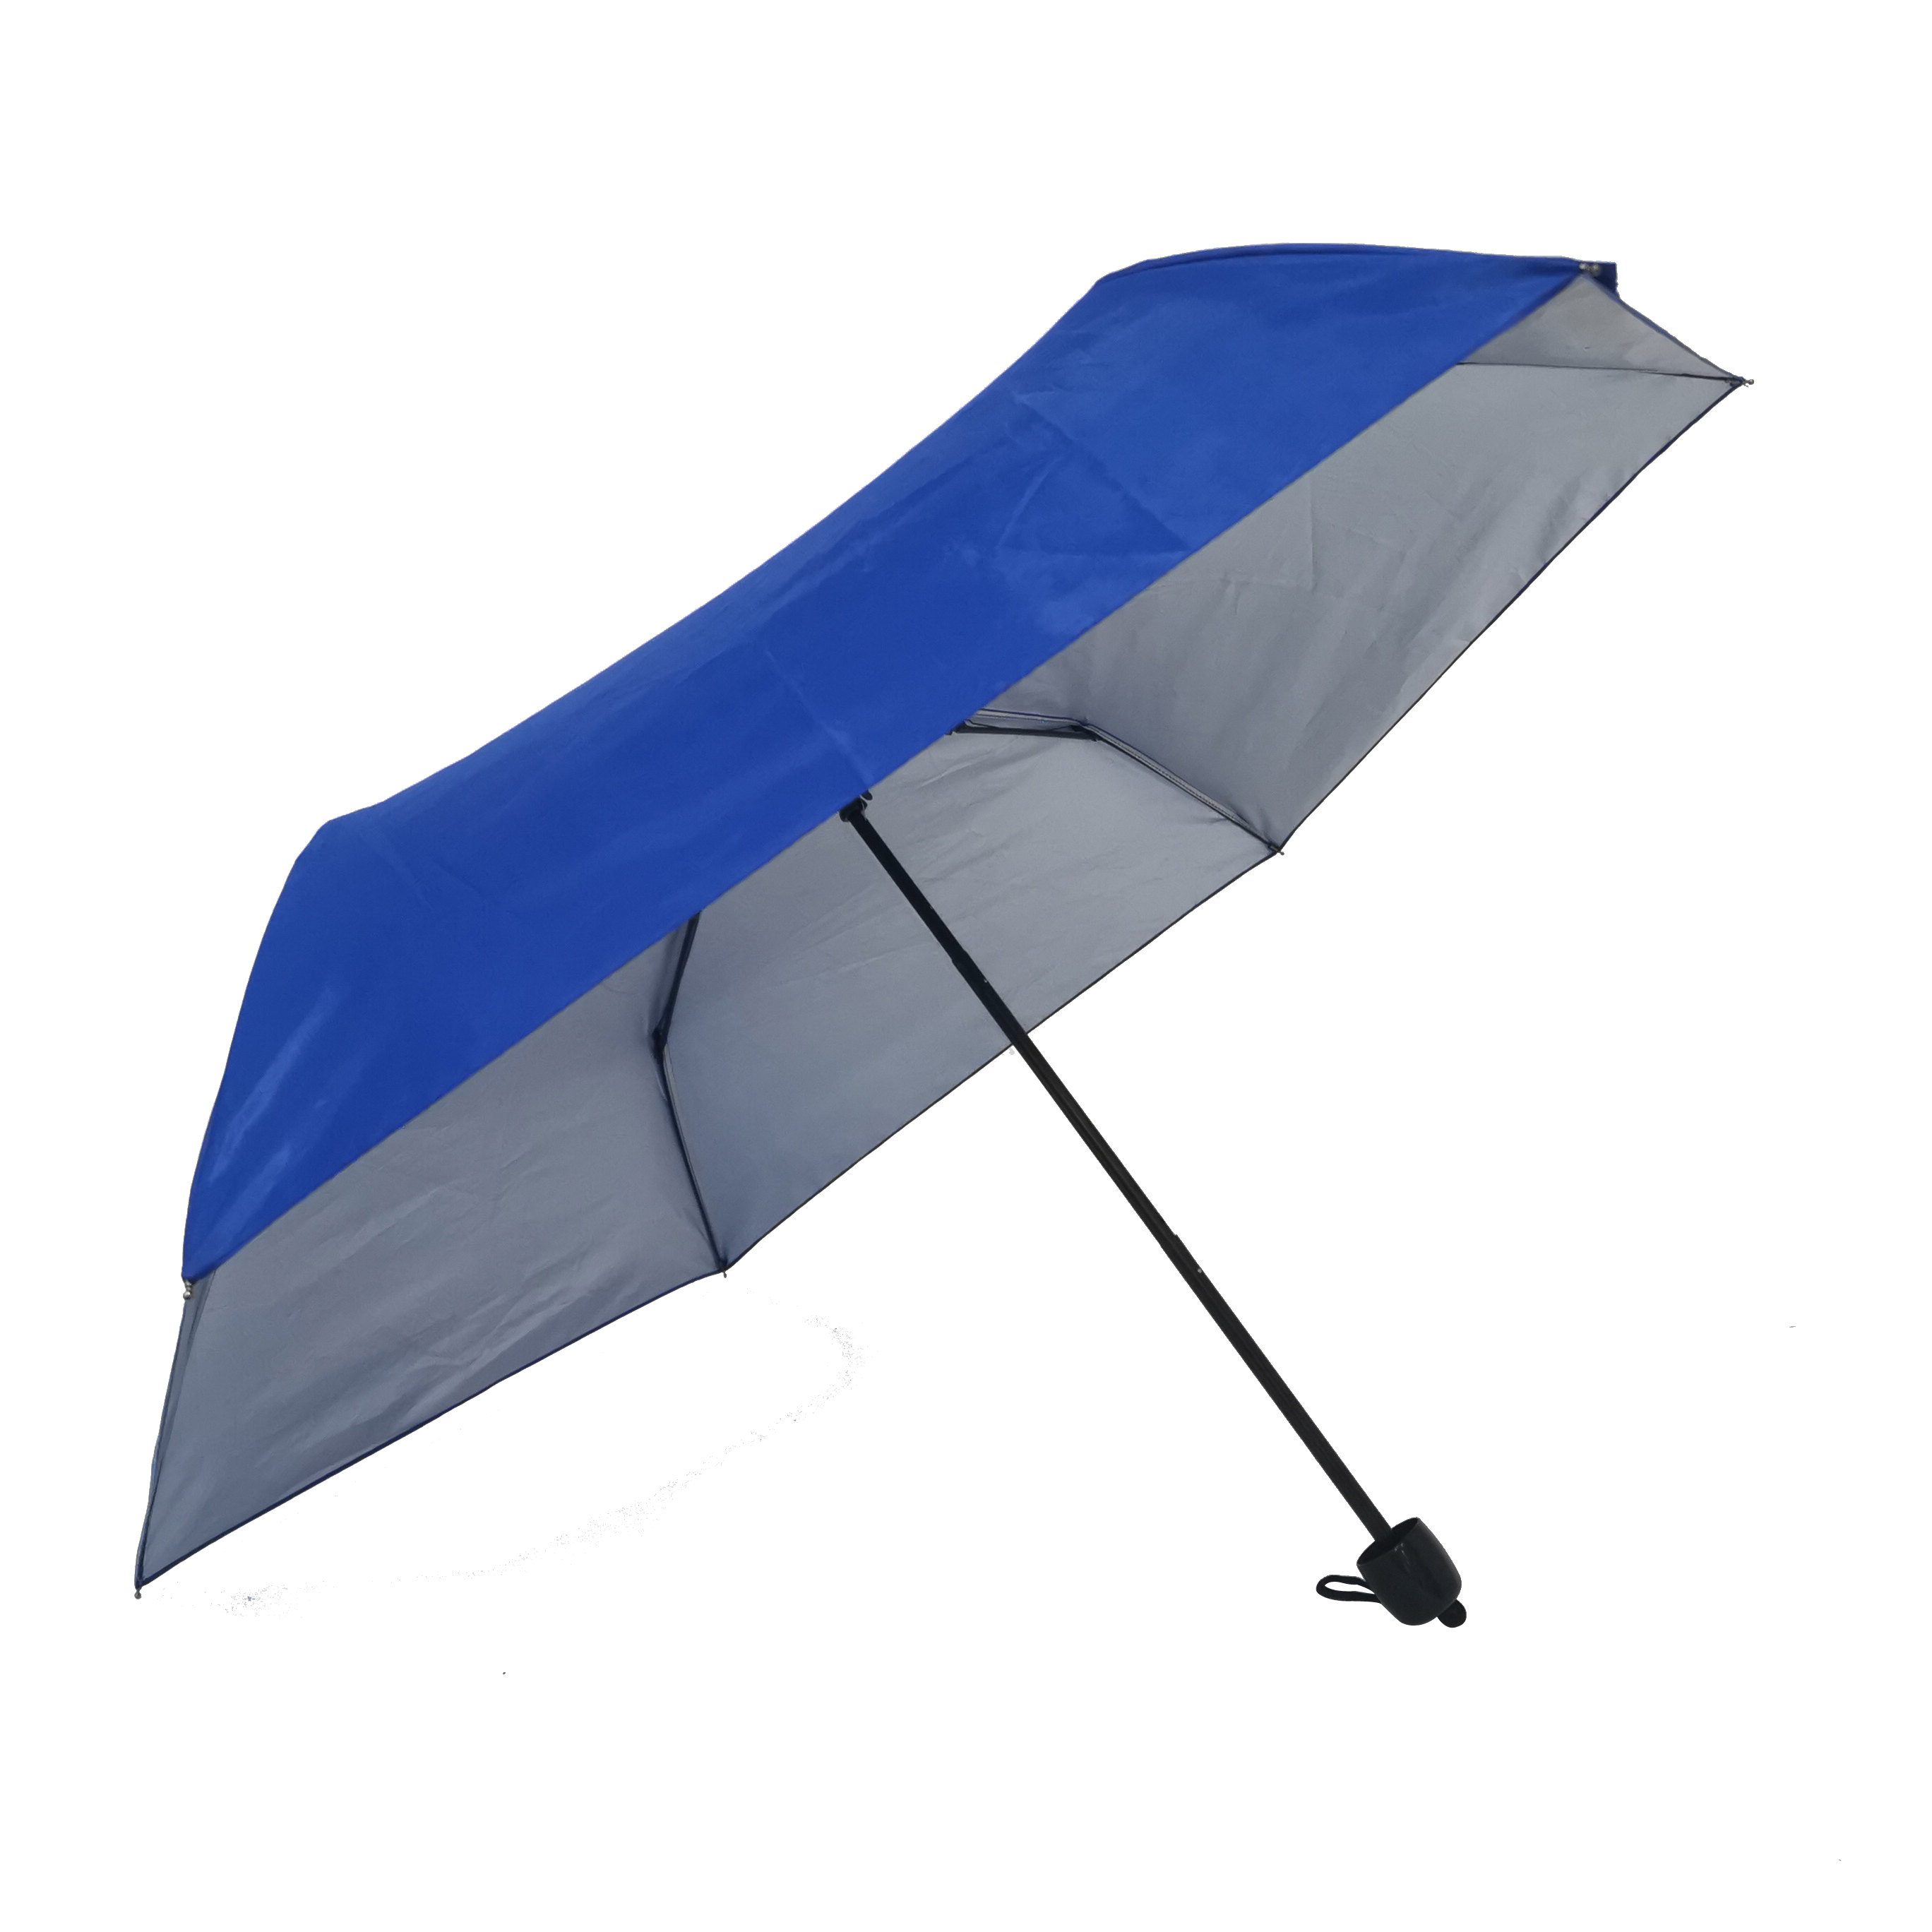 https://www.hodaumbrella.com/automatisch-open-manual-close-3-fold-umbrella-product/